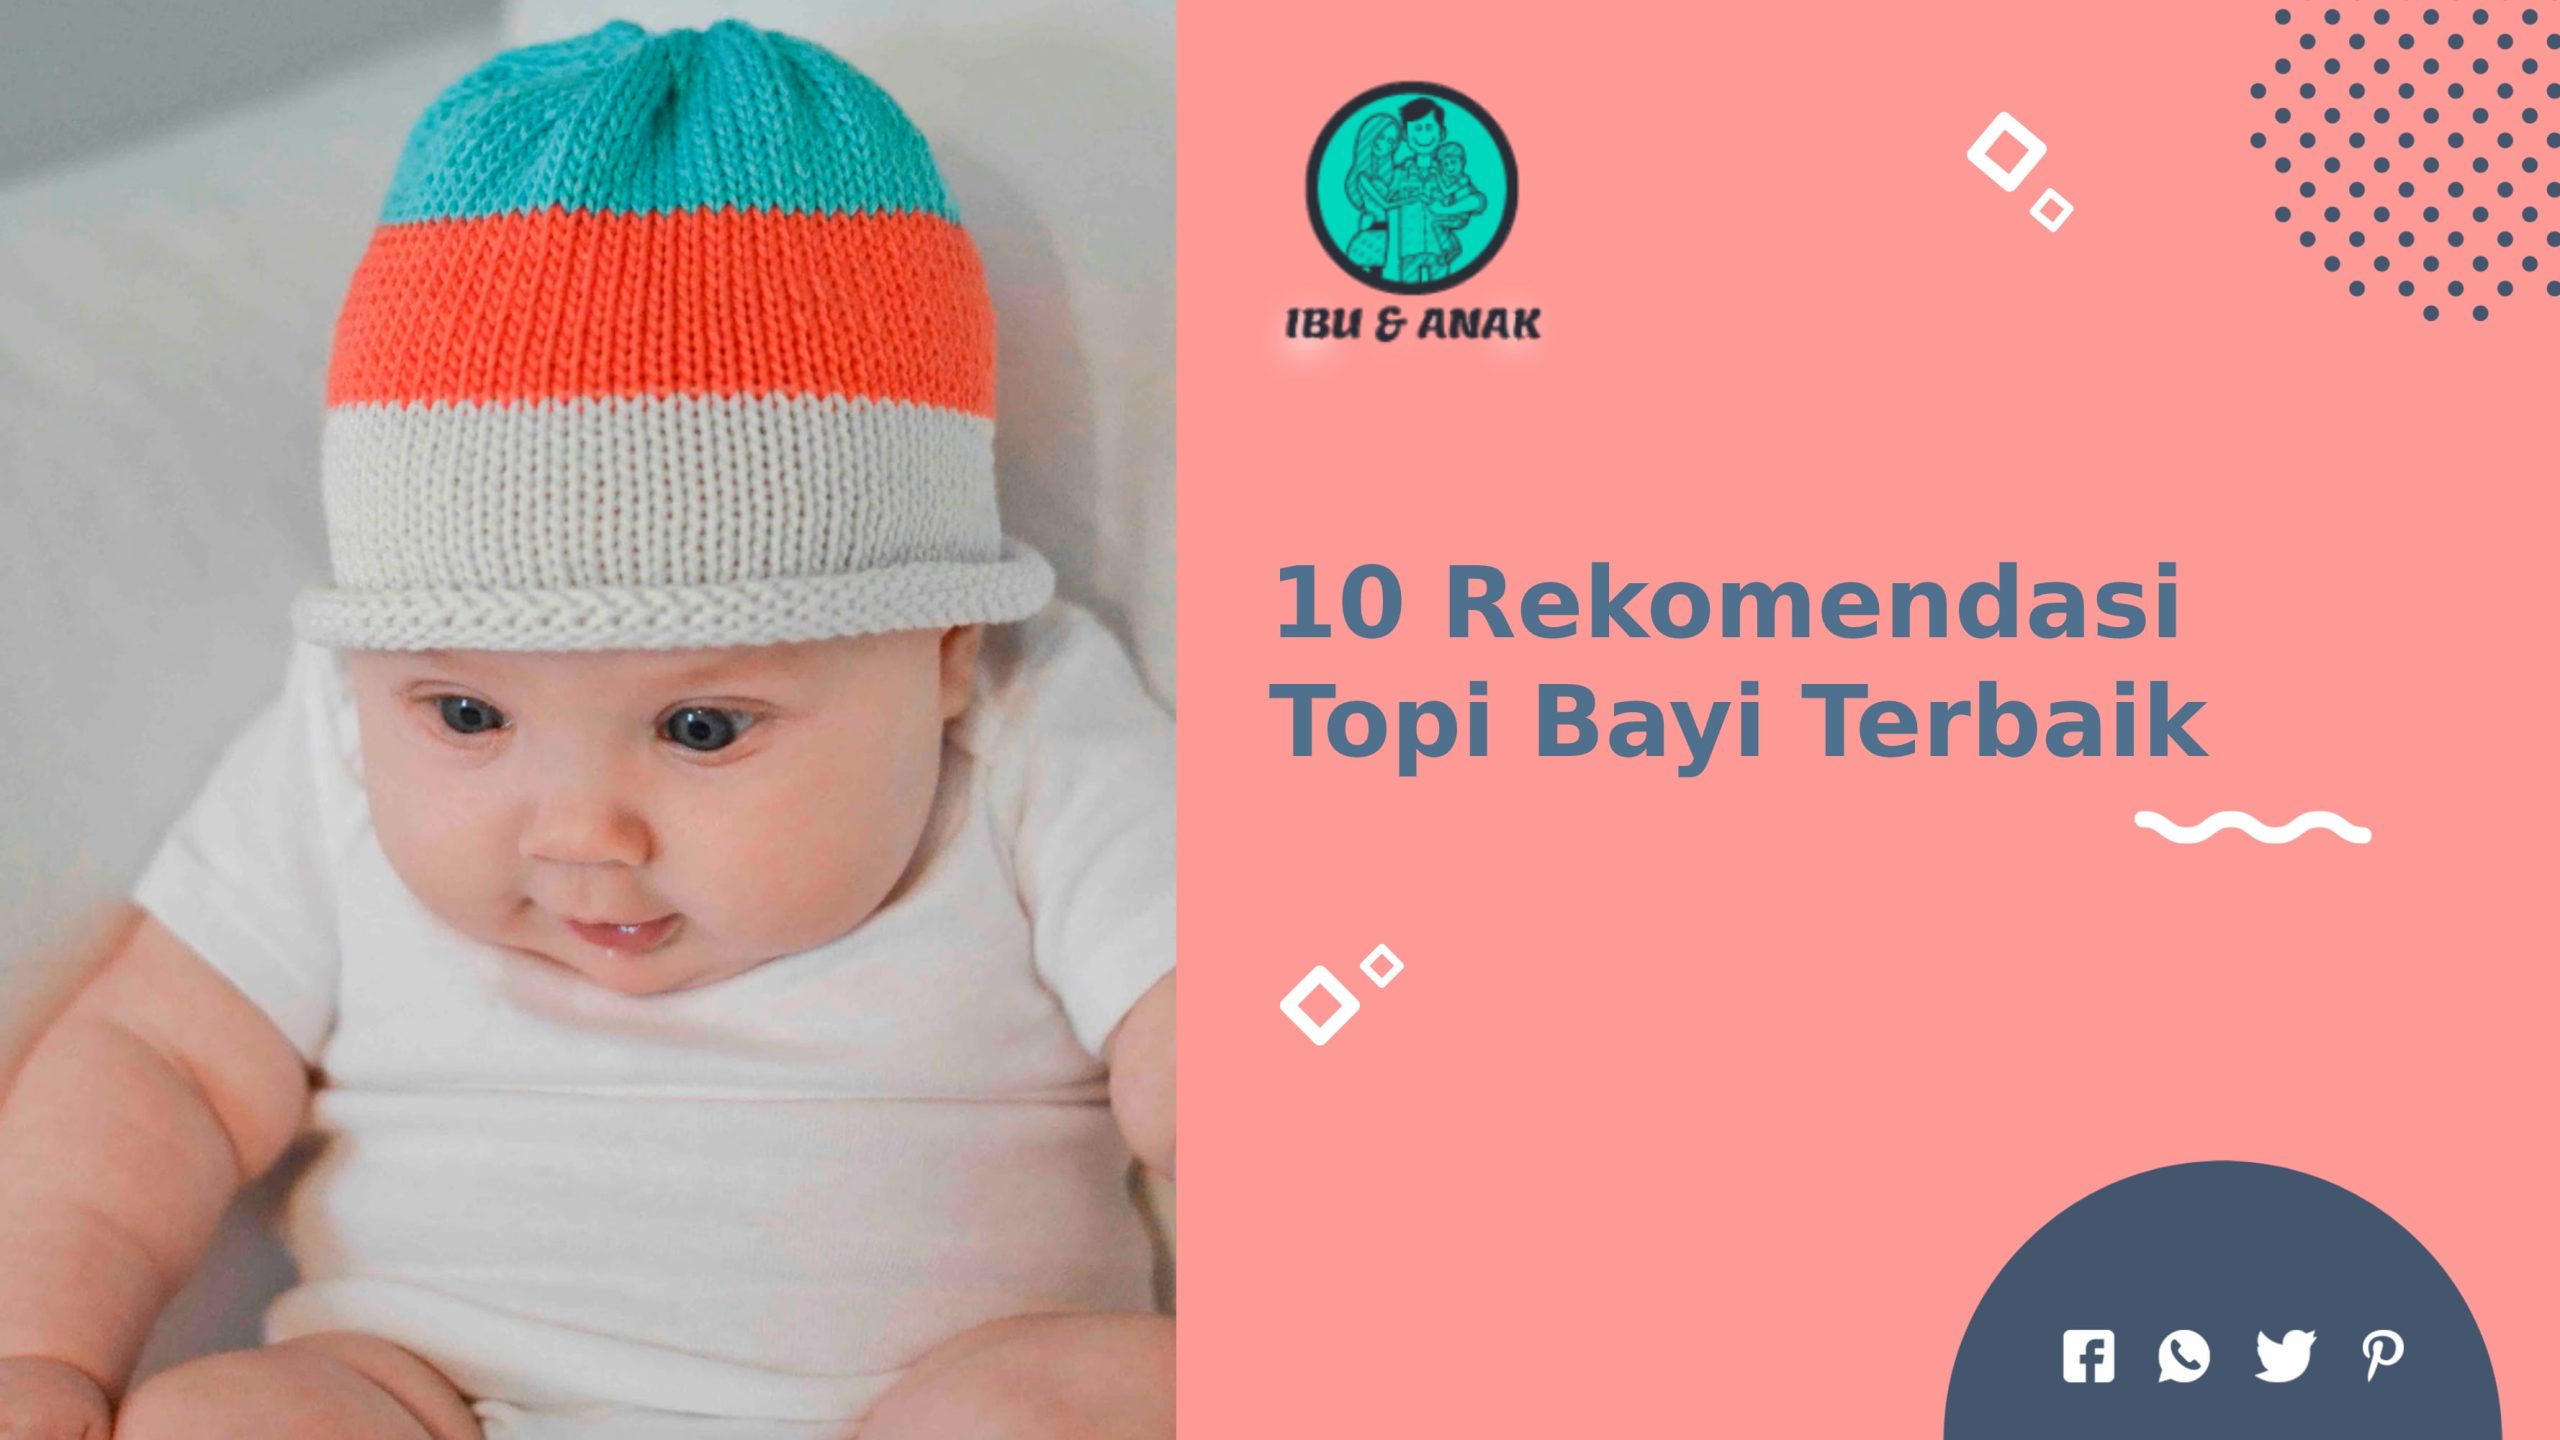 Rekomendasi Topi Bayi Terbaik